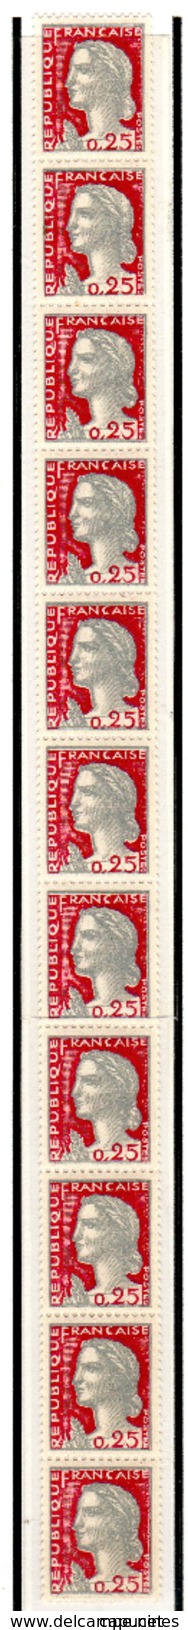 M. De Decaris (1263**) - Roulette N° 52 - 1960 Marianne (Decaris)